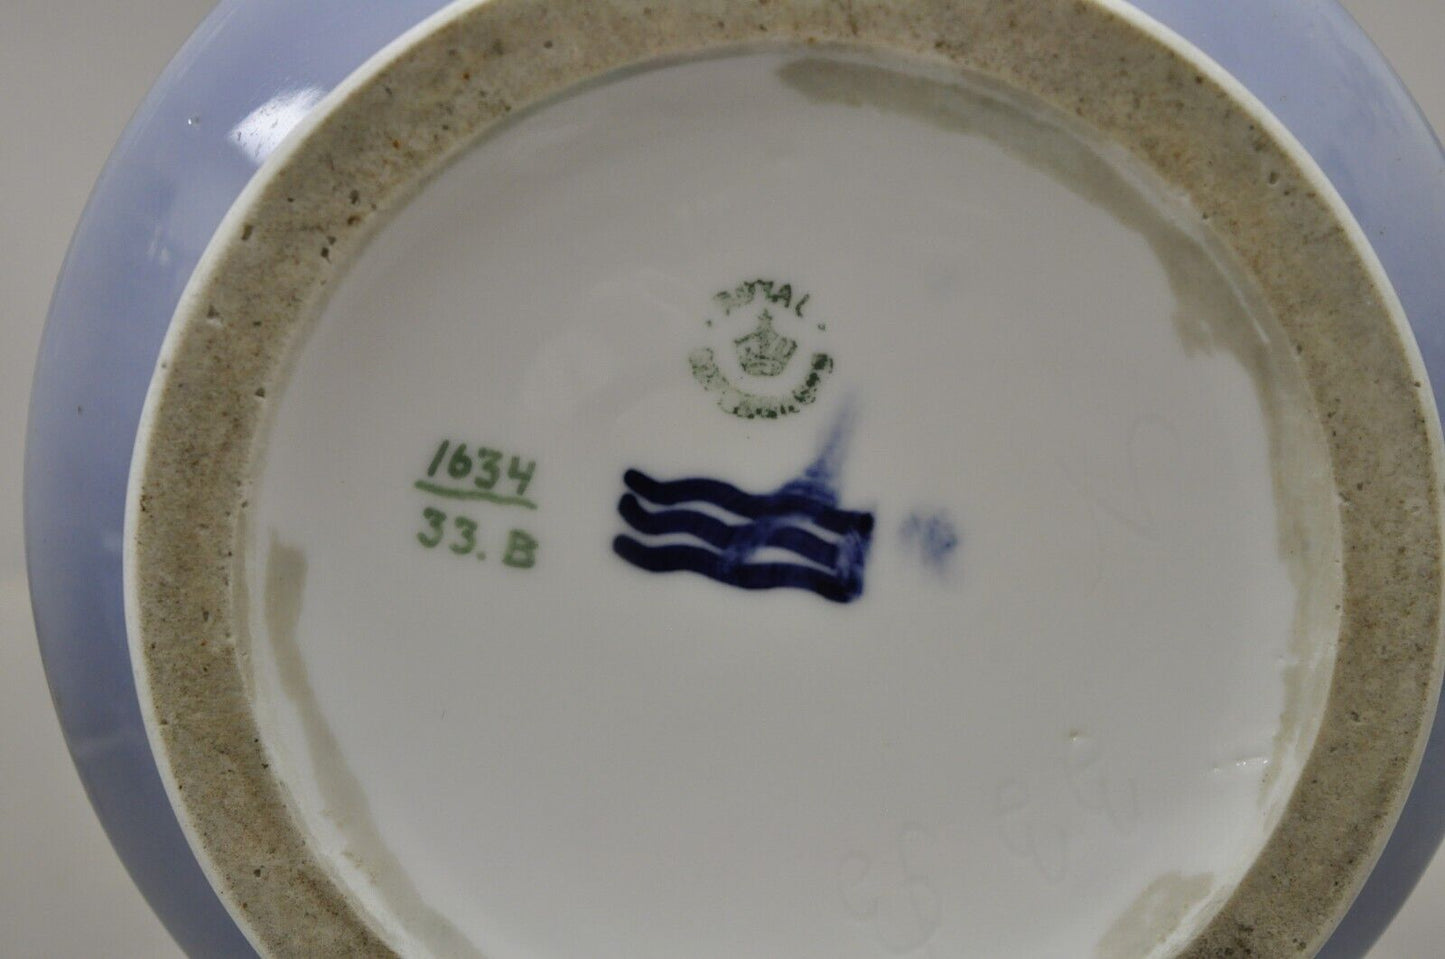 Antique Royal Copenhagen 13" Blue White Porcelain Nautical Ship Vase 1634 33.B